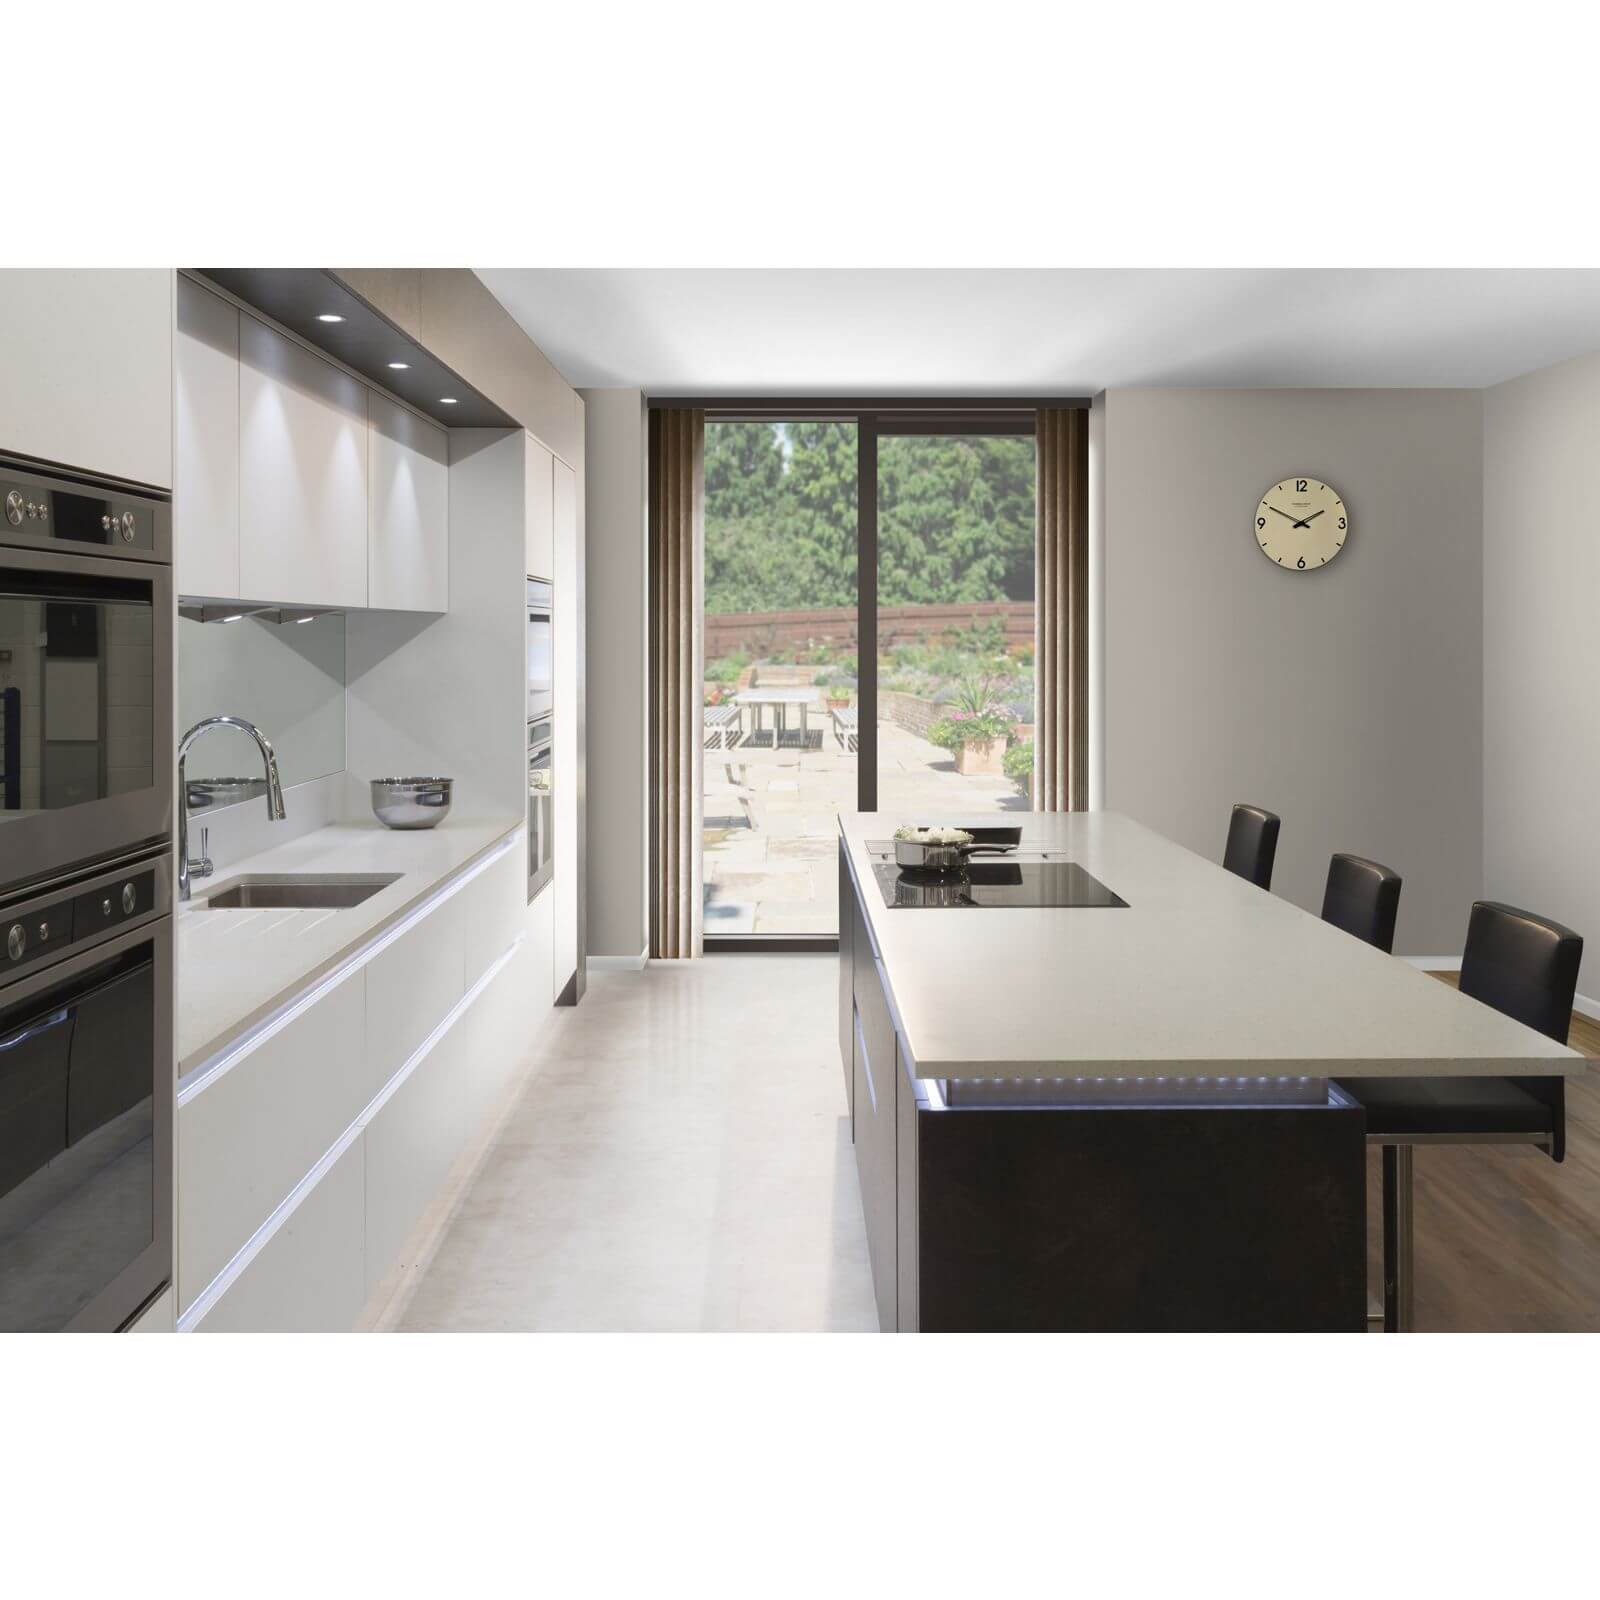 Minerva Grey Crystal Kitchen Worktop - 305 x 60 x 2.5cm